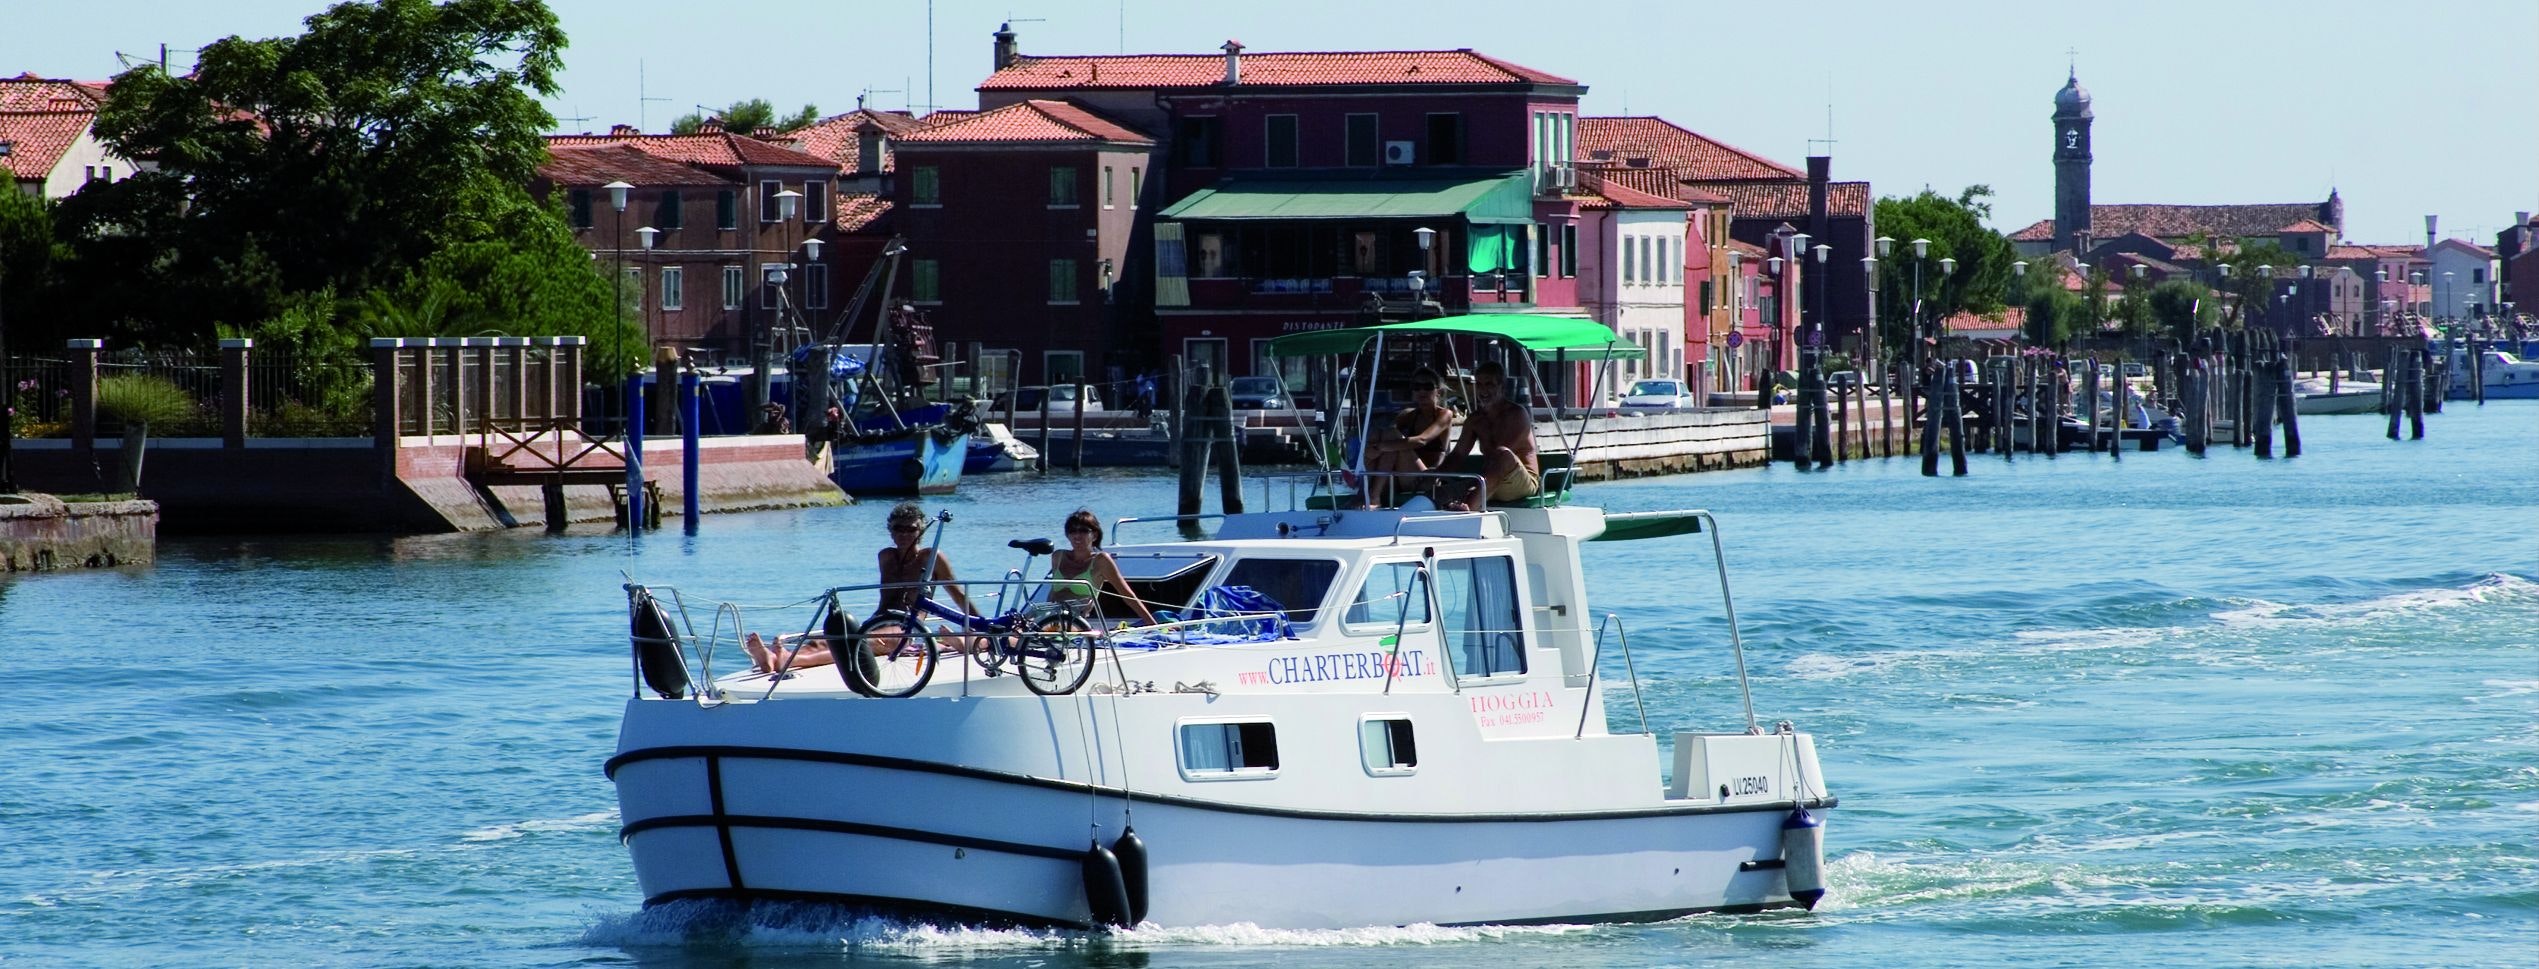 Люди на борту лодки-дома в Венецианской лагуне